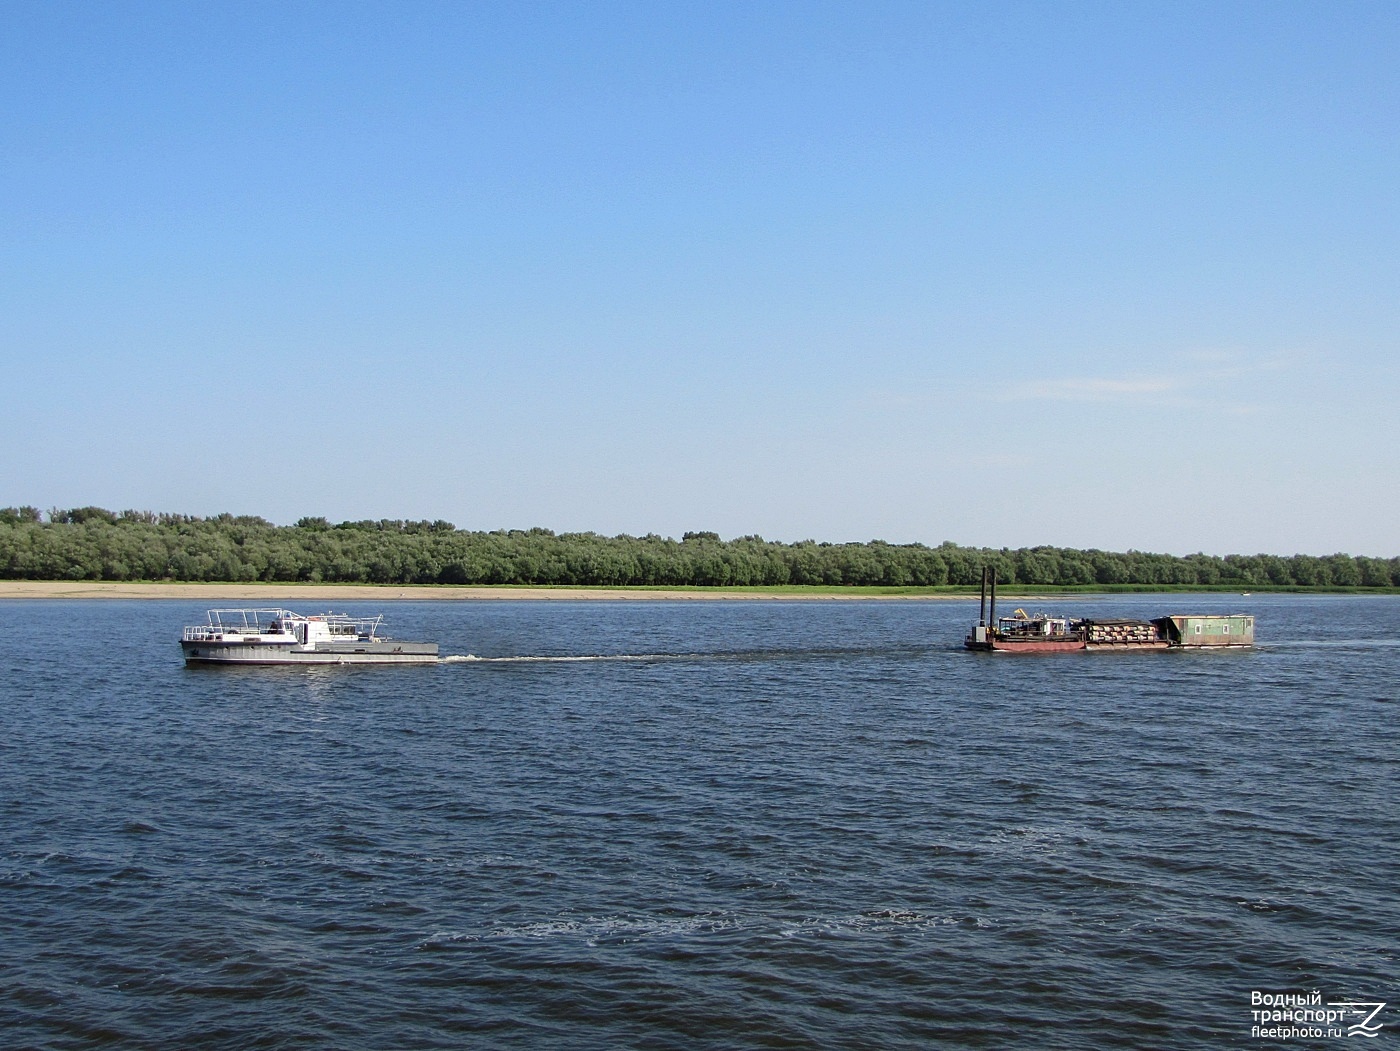 Неопознанное судно - тип Костромич. Russia - Volga Basin